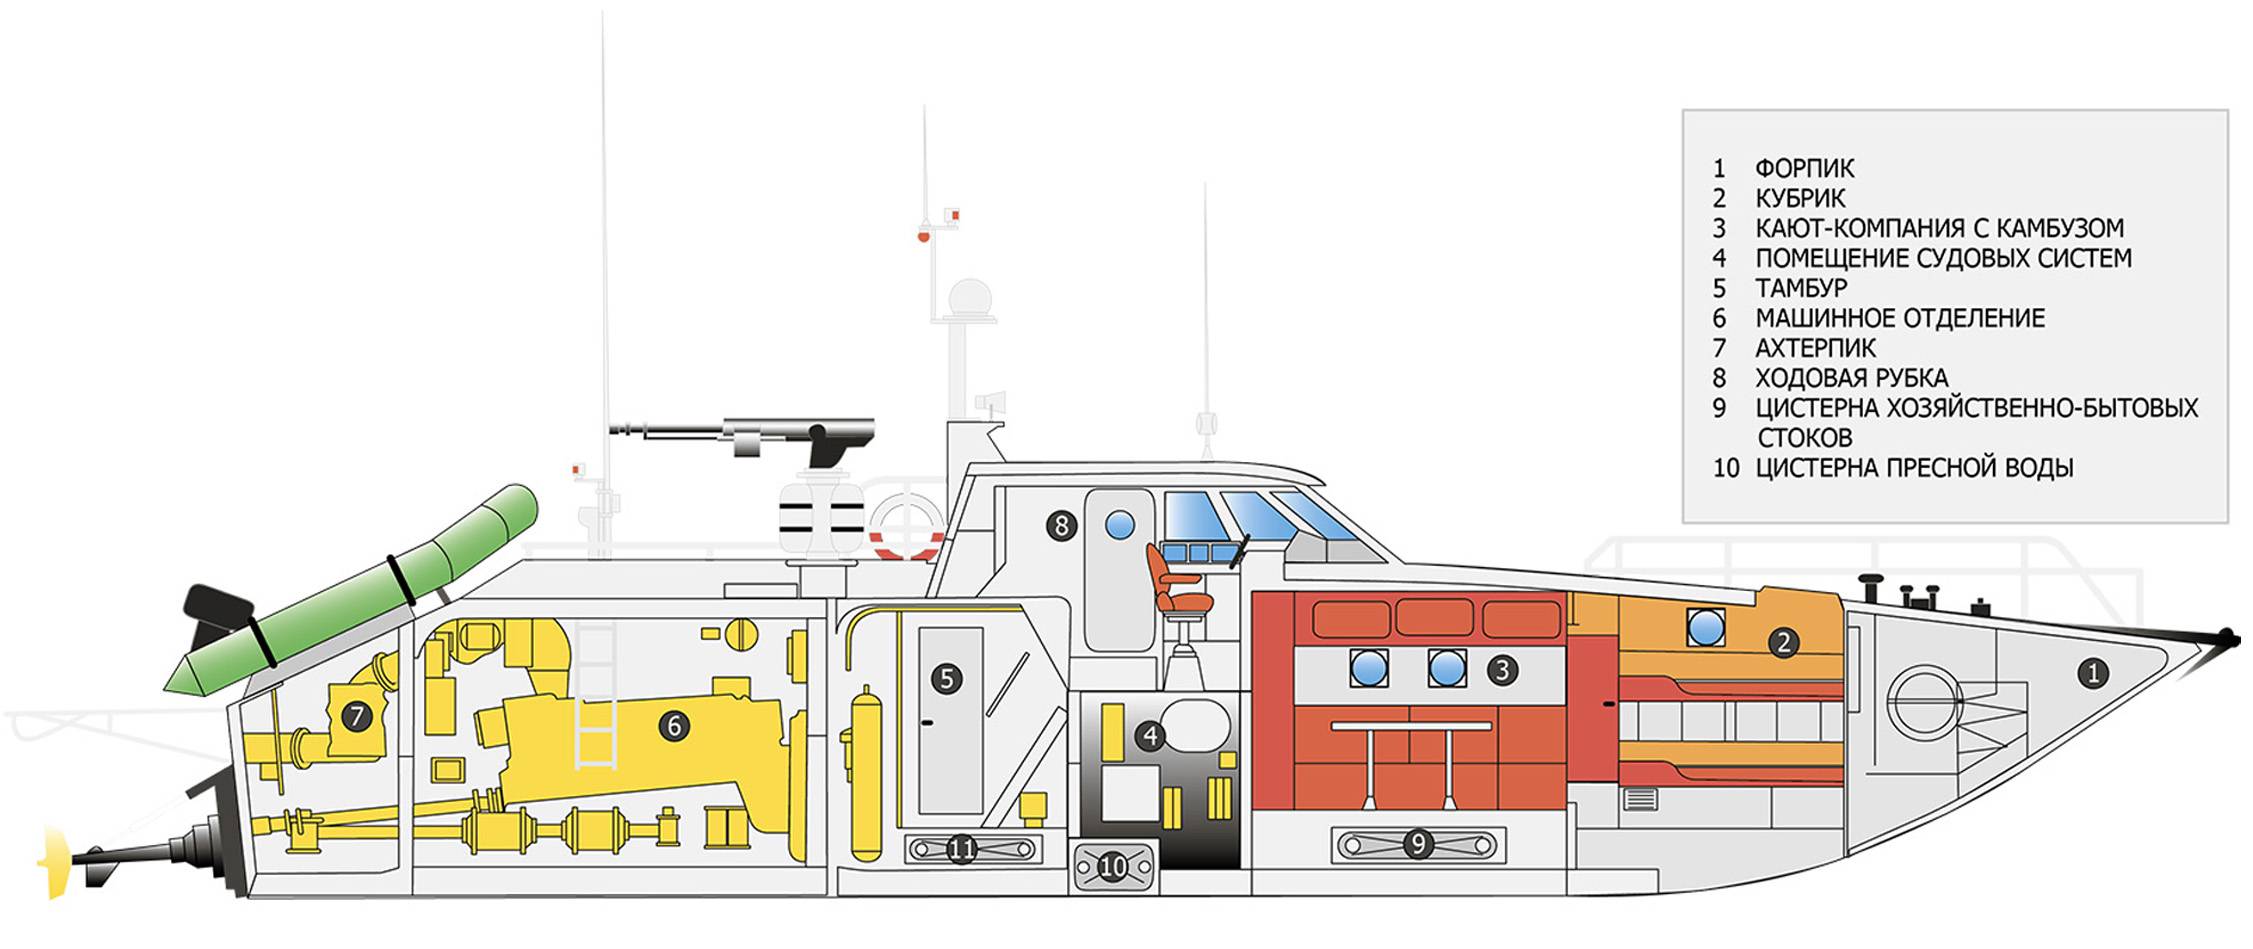 Проект 03160, быстроходный патрульный катер раптор, сравнение с зарубежными аналогами, вооружение и конструкция, назначение, применение и ттх